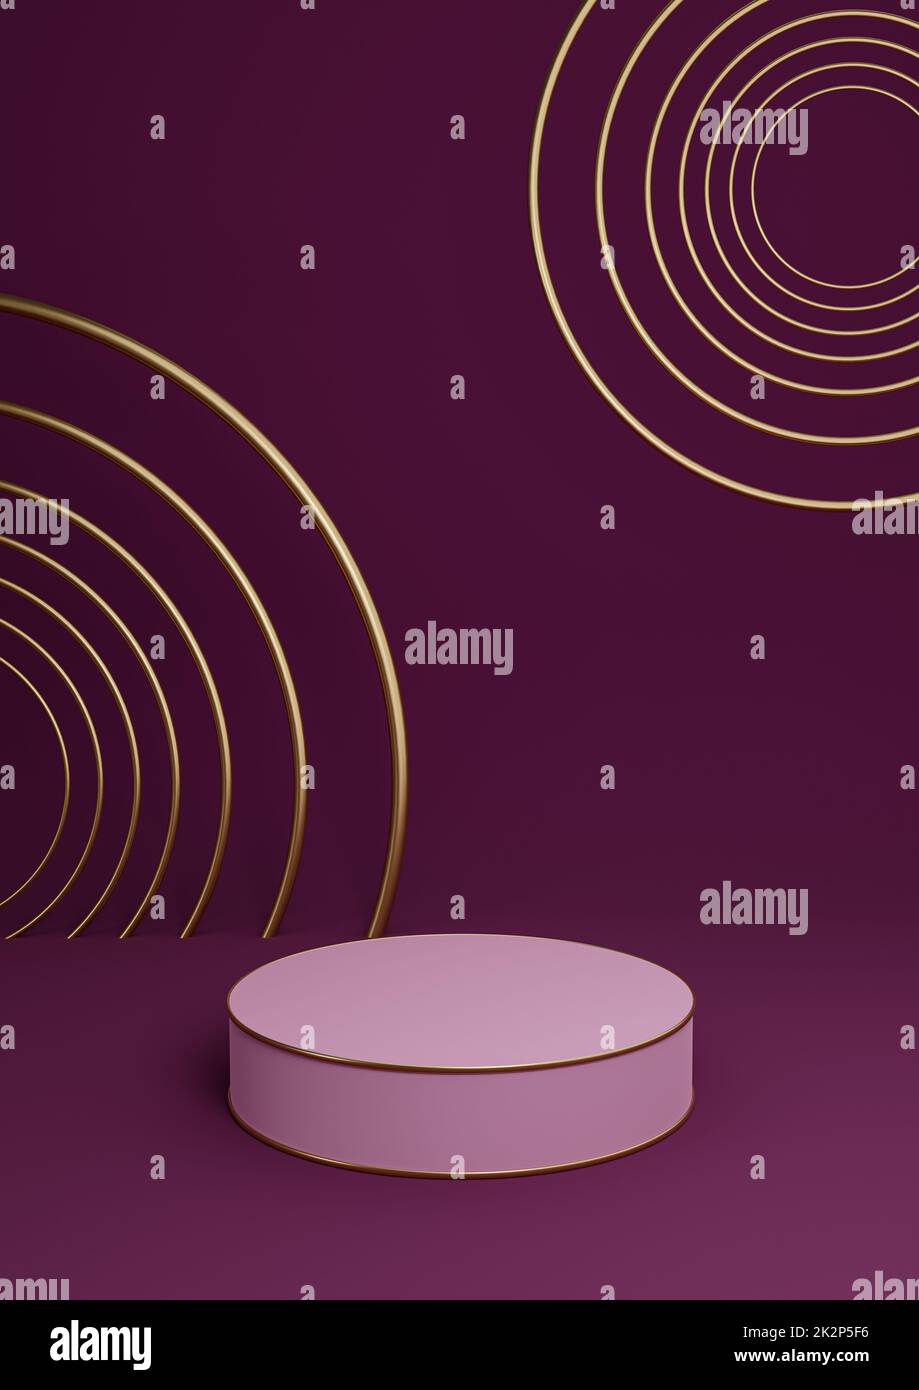 Magenta foncé, violet 3D rendu minimal produit afficher luxe cylindre podium ou produit fond résumé composition avec lignes et cercles dorés Banque D'Images